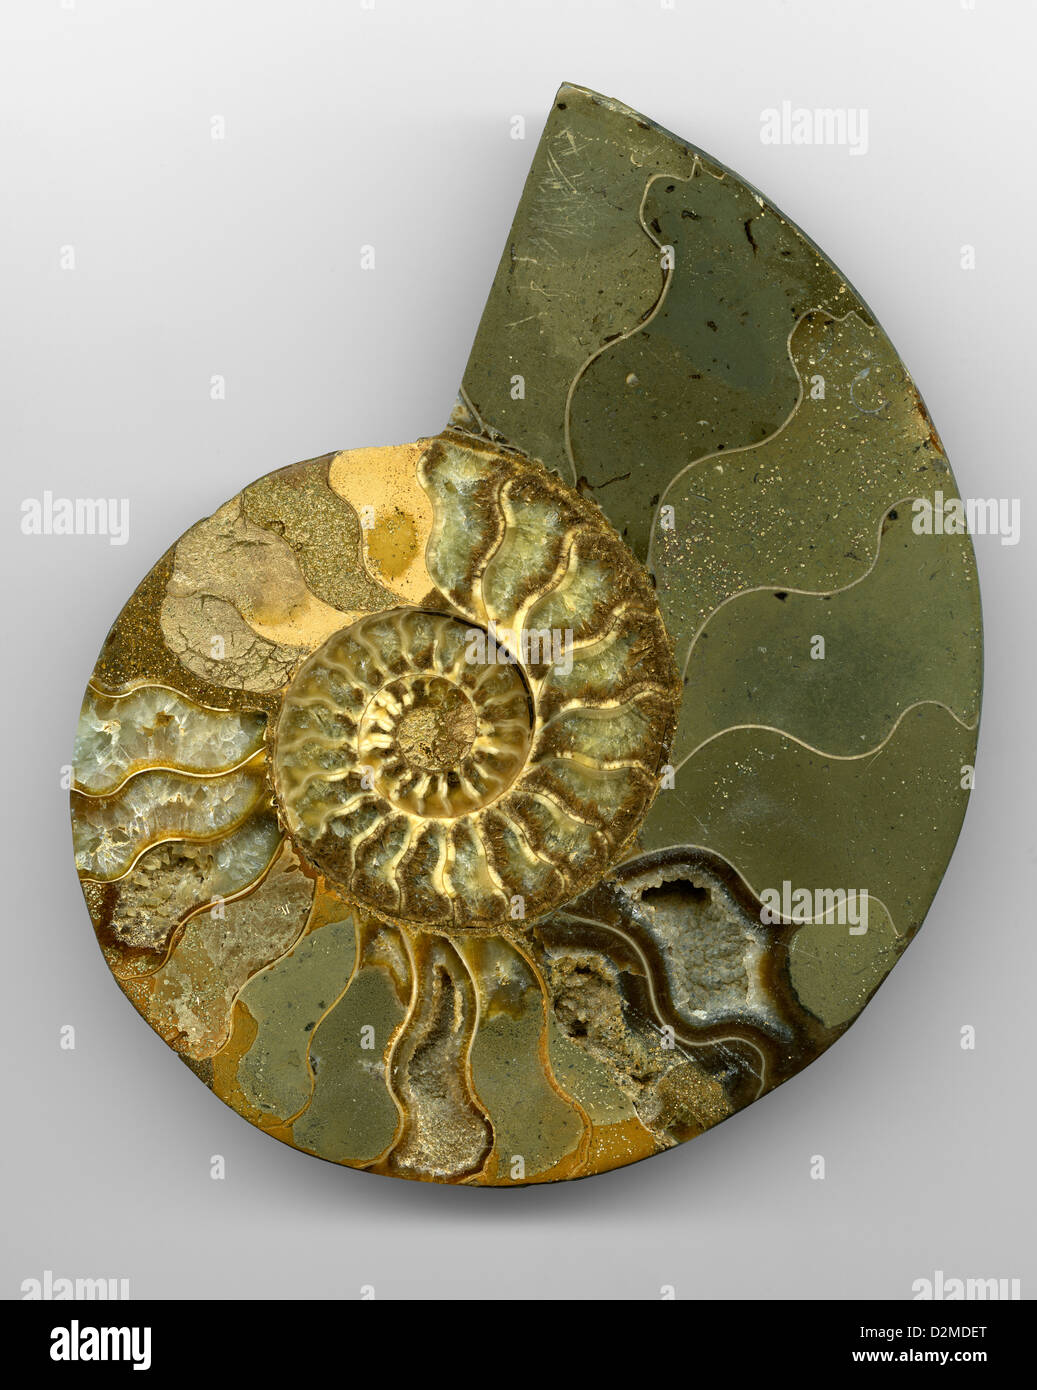 Sección transversal de ammonites fósiles con cristales de Calcita, Hoplitidae Cleoniceras sp.,. Lago Tritriva Región, Madagascar, África. Foto de stock